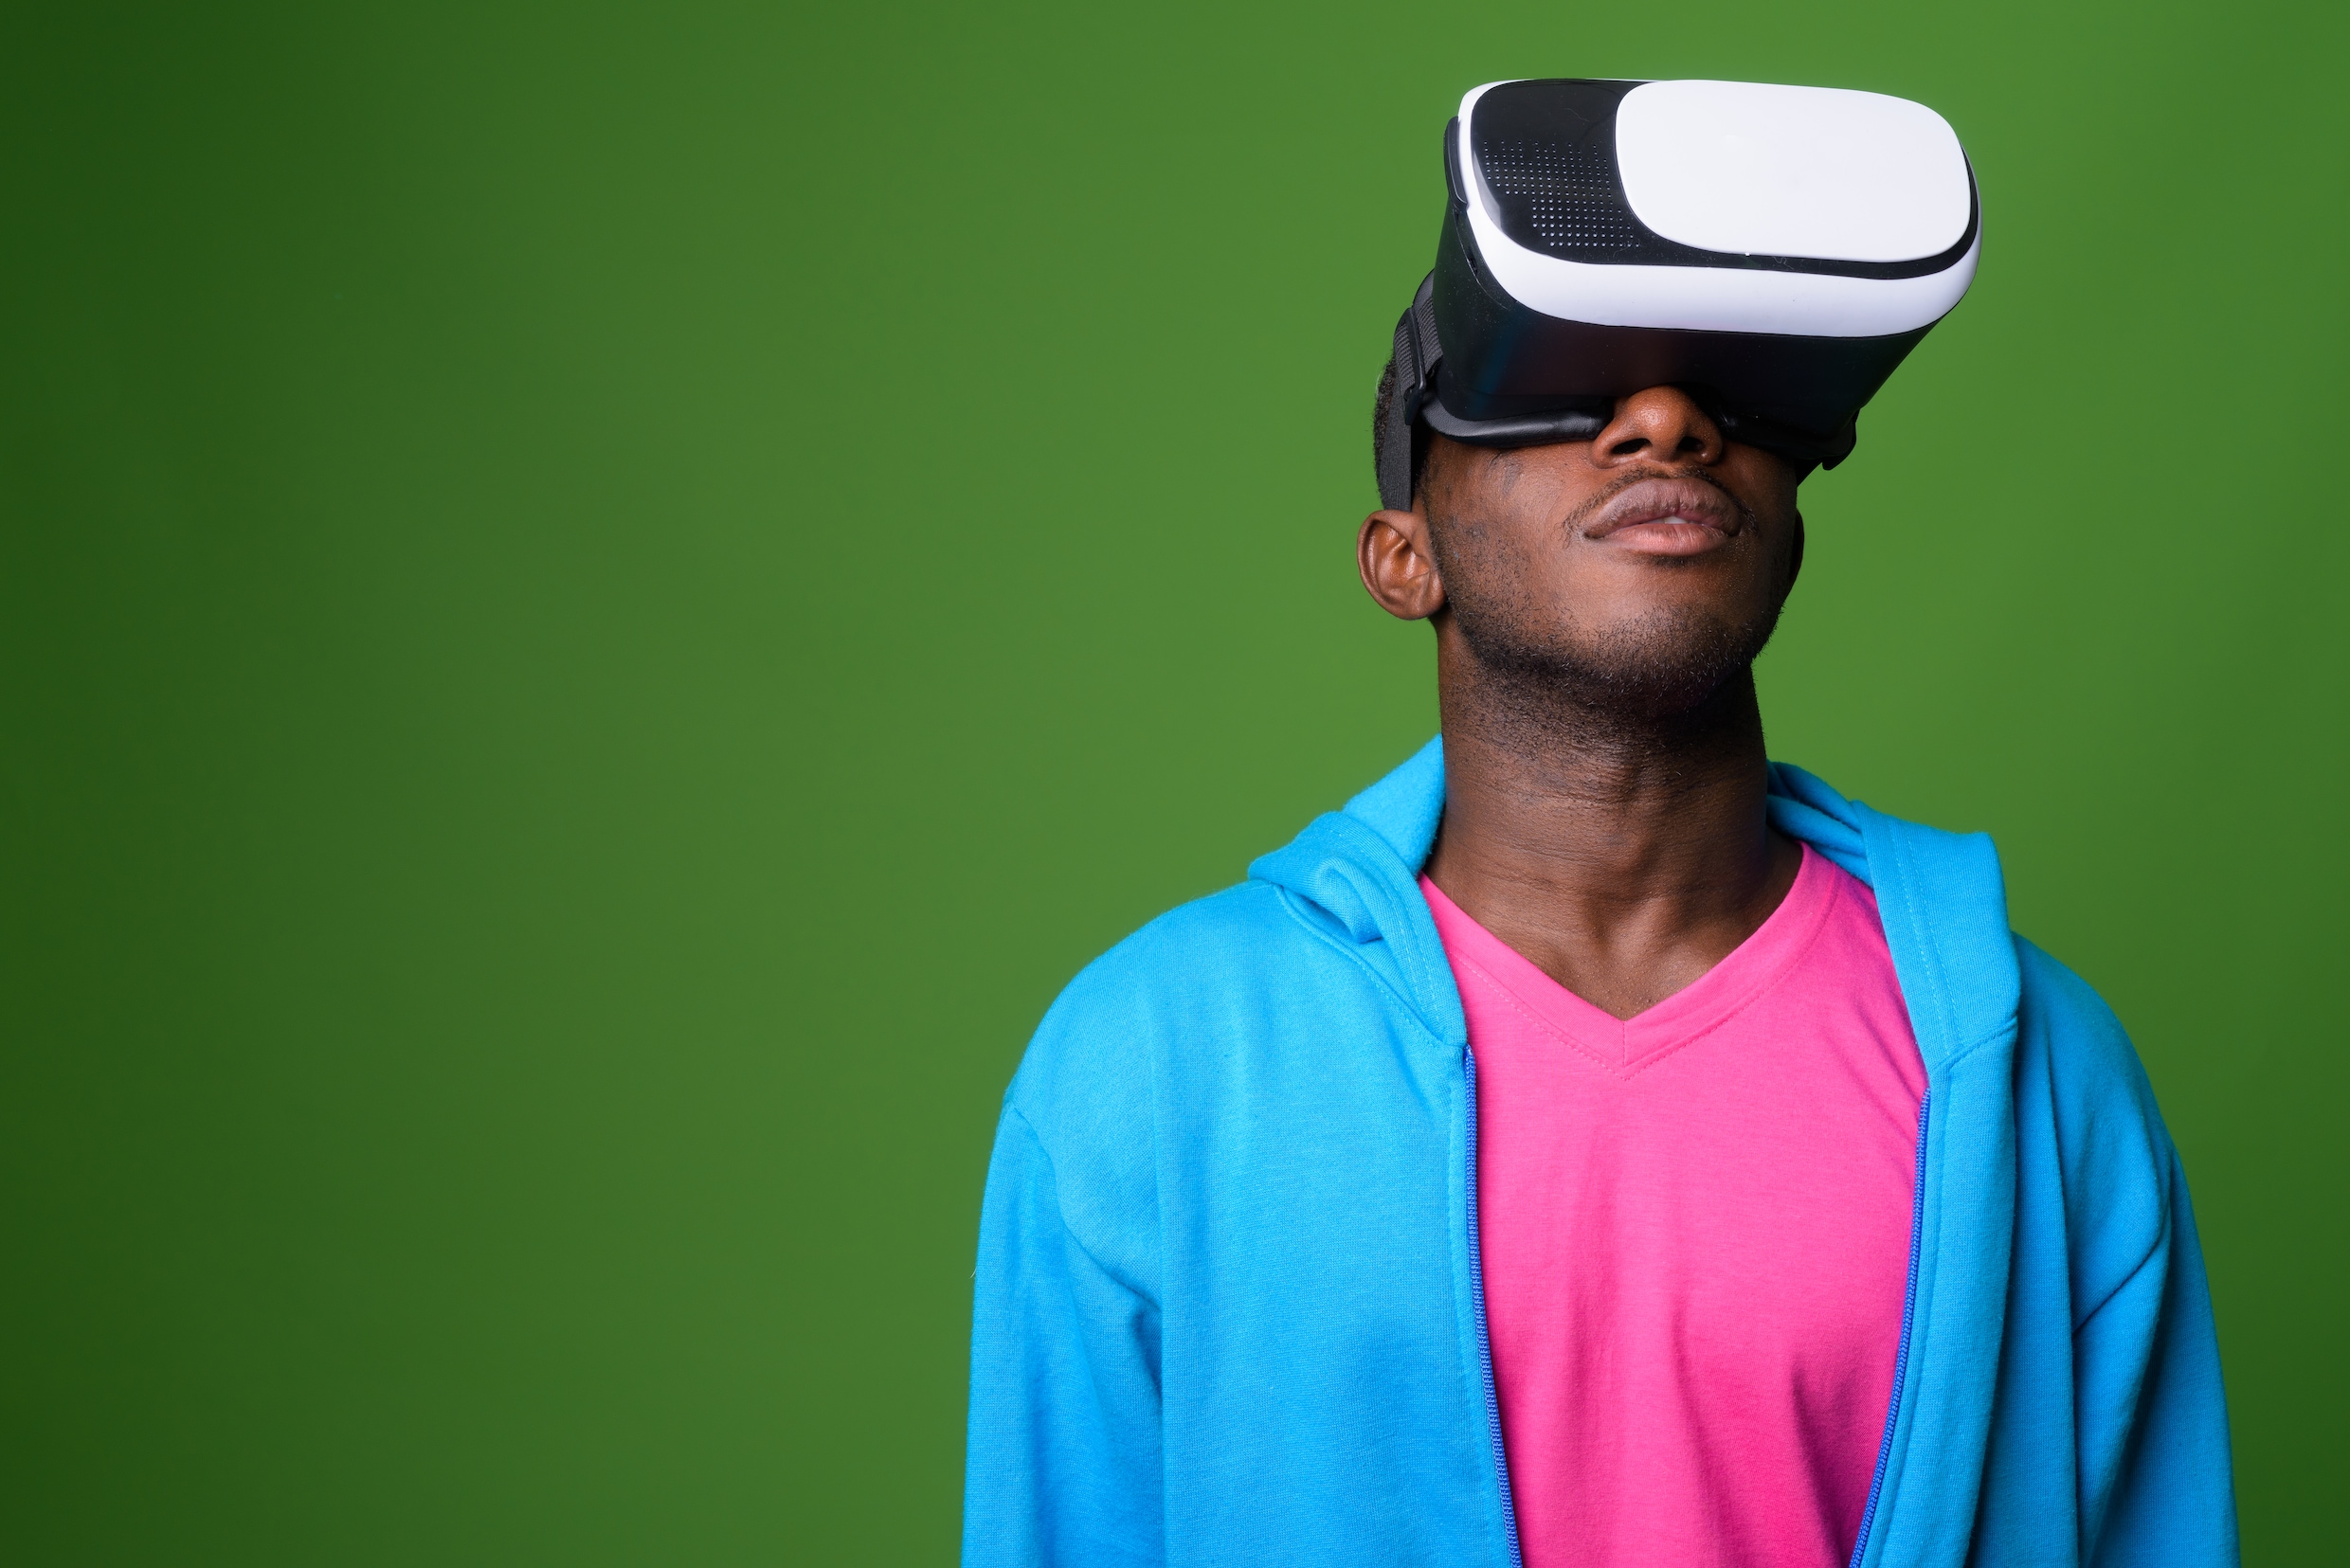 3D-brillen en virtual reality zijn het nieuwste wapen in de strijd voor schone energie